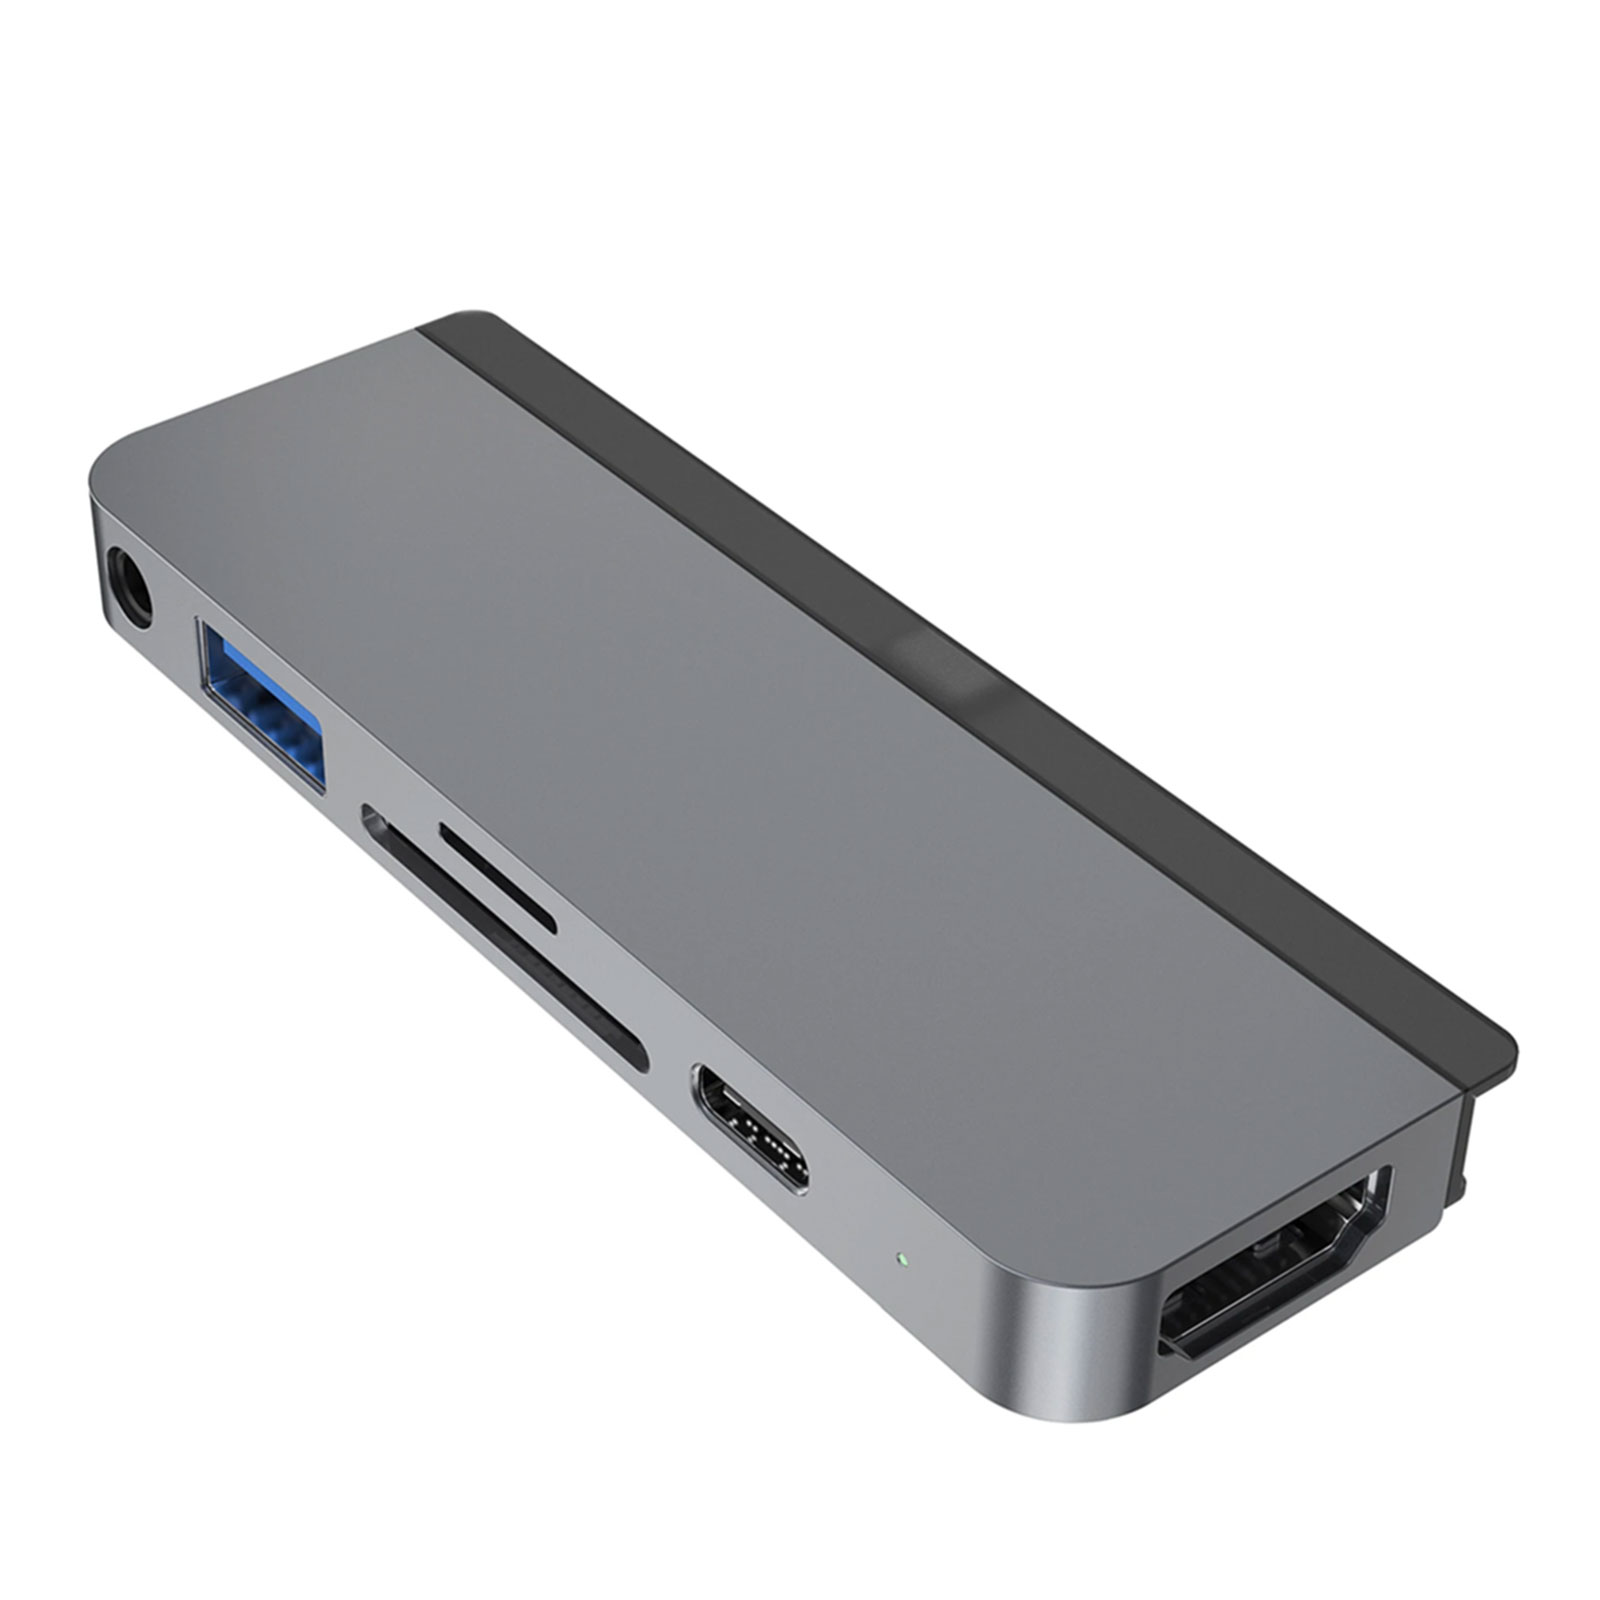 Hyper 6-in-1 iPad Pro USB-C Hub grau (HDMI, Mini DisplayPort, RJ-45, USB 3.2 Gen 1 (3.1 Gen 1) Type-A, USB 3.2 Gen 1 (3.1 Gen 1) Type-C, VGA)